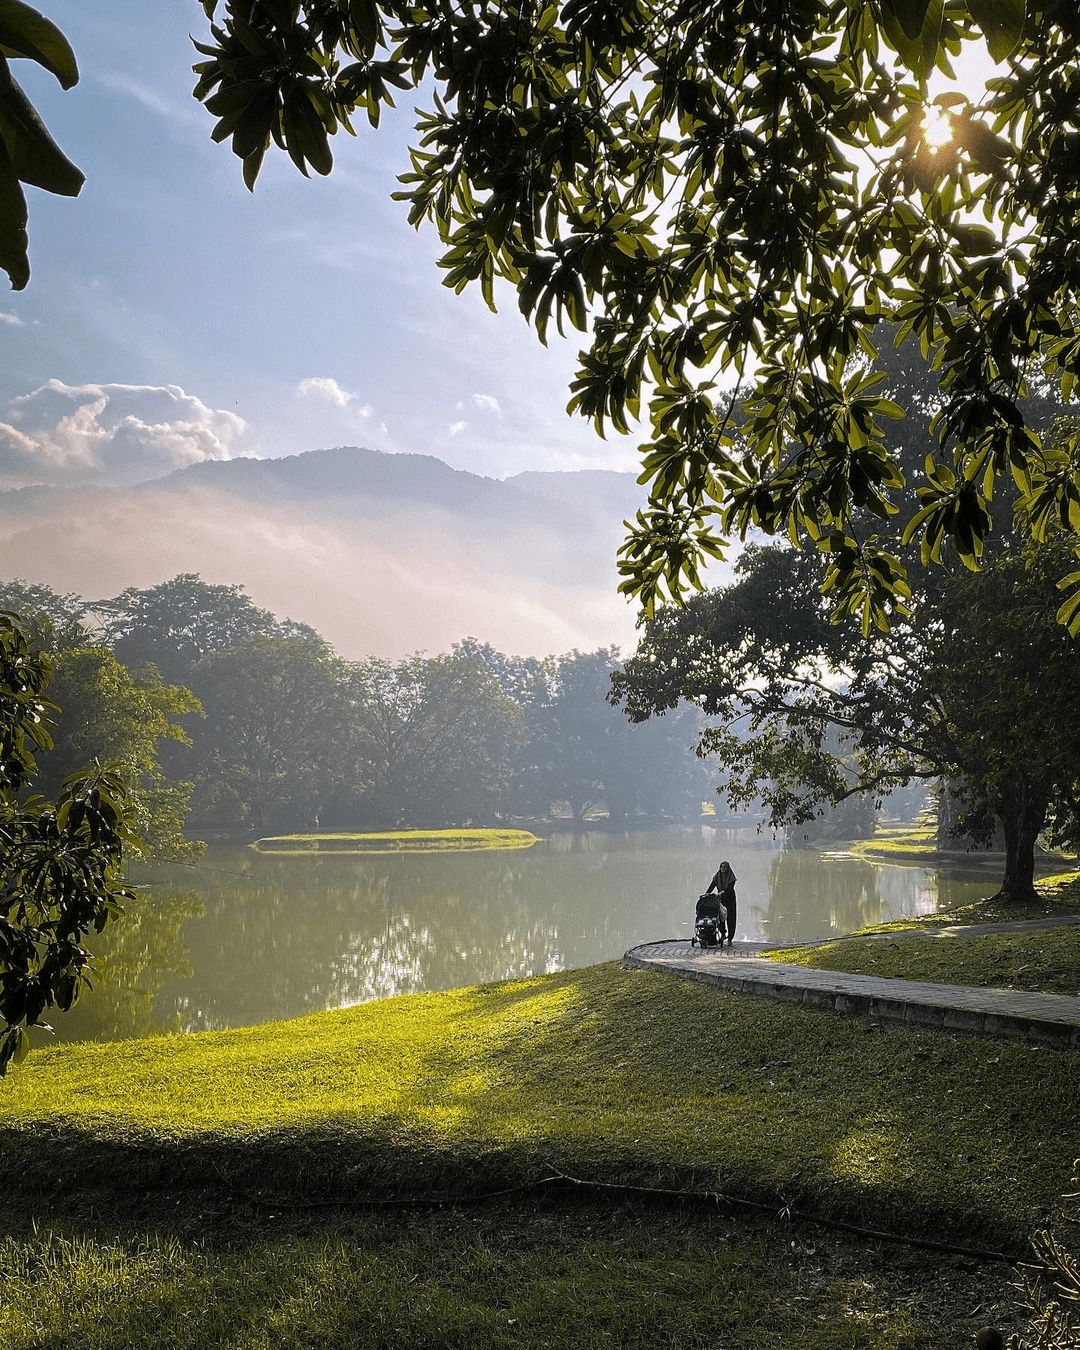 Taiping Lake Gardens in Perak - lake